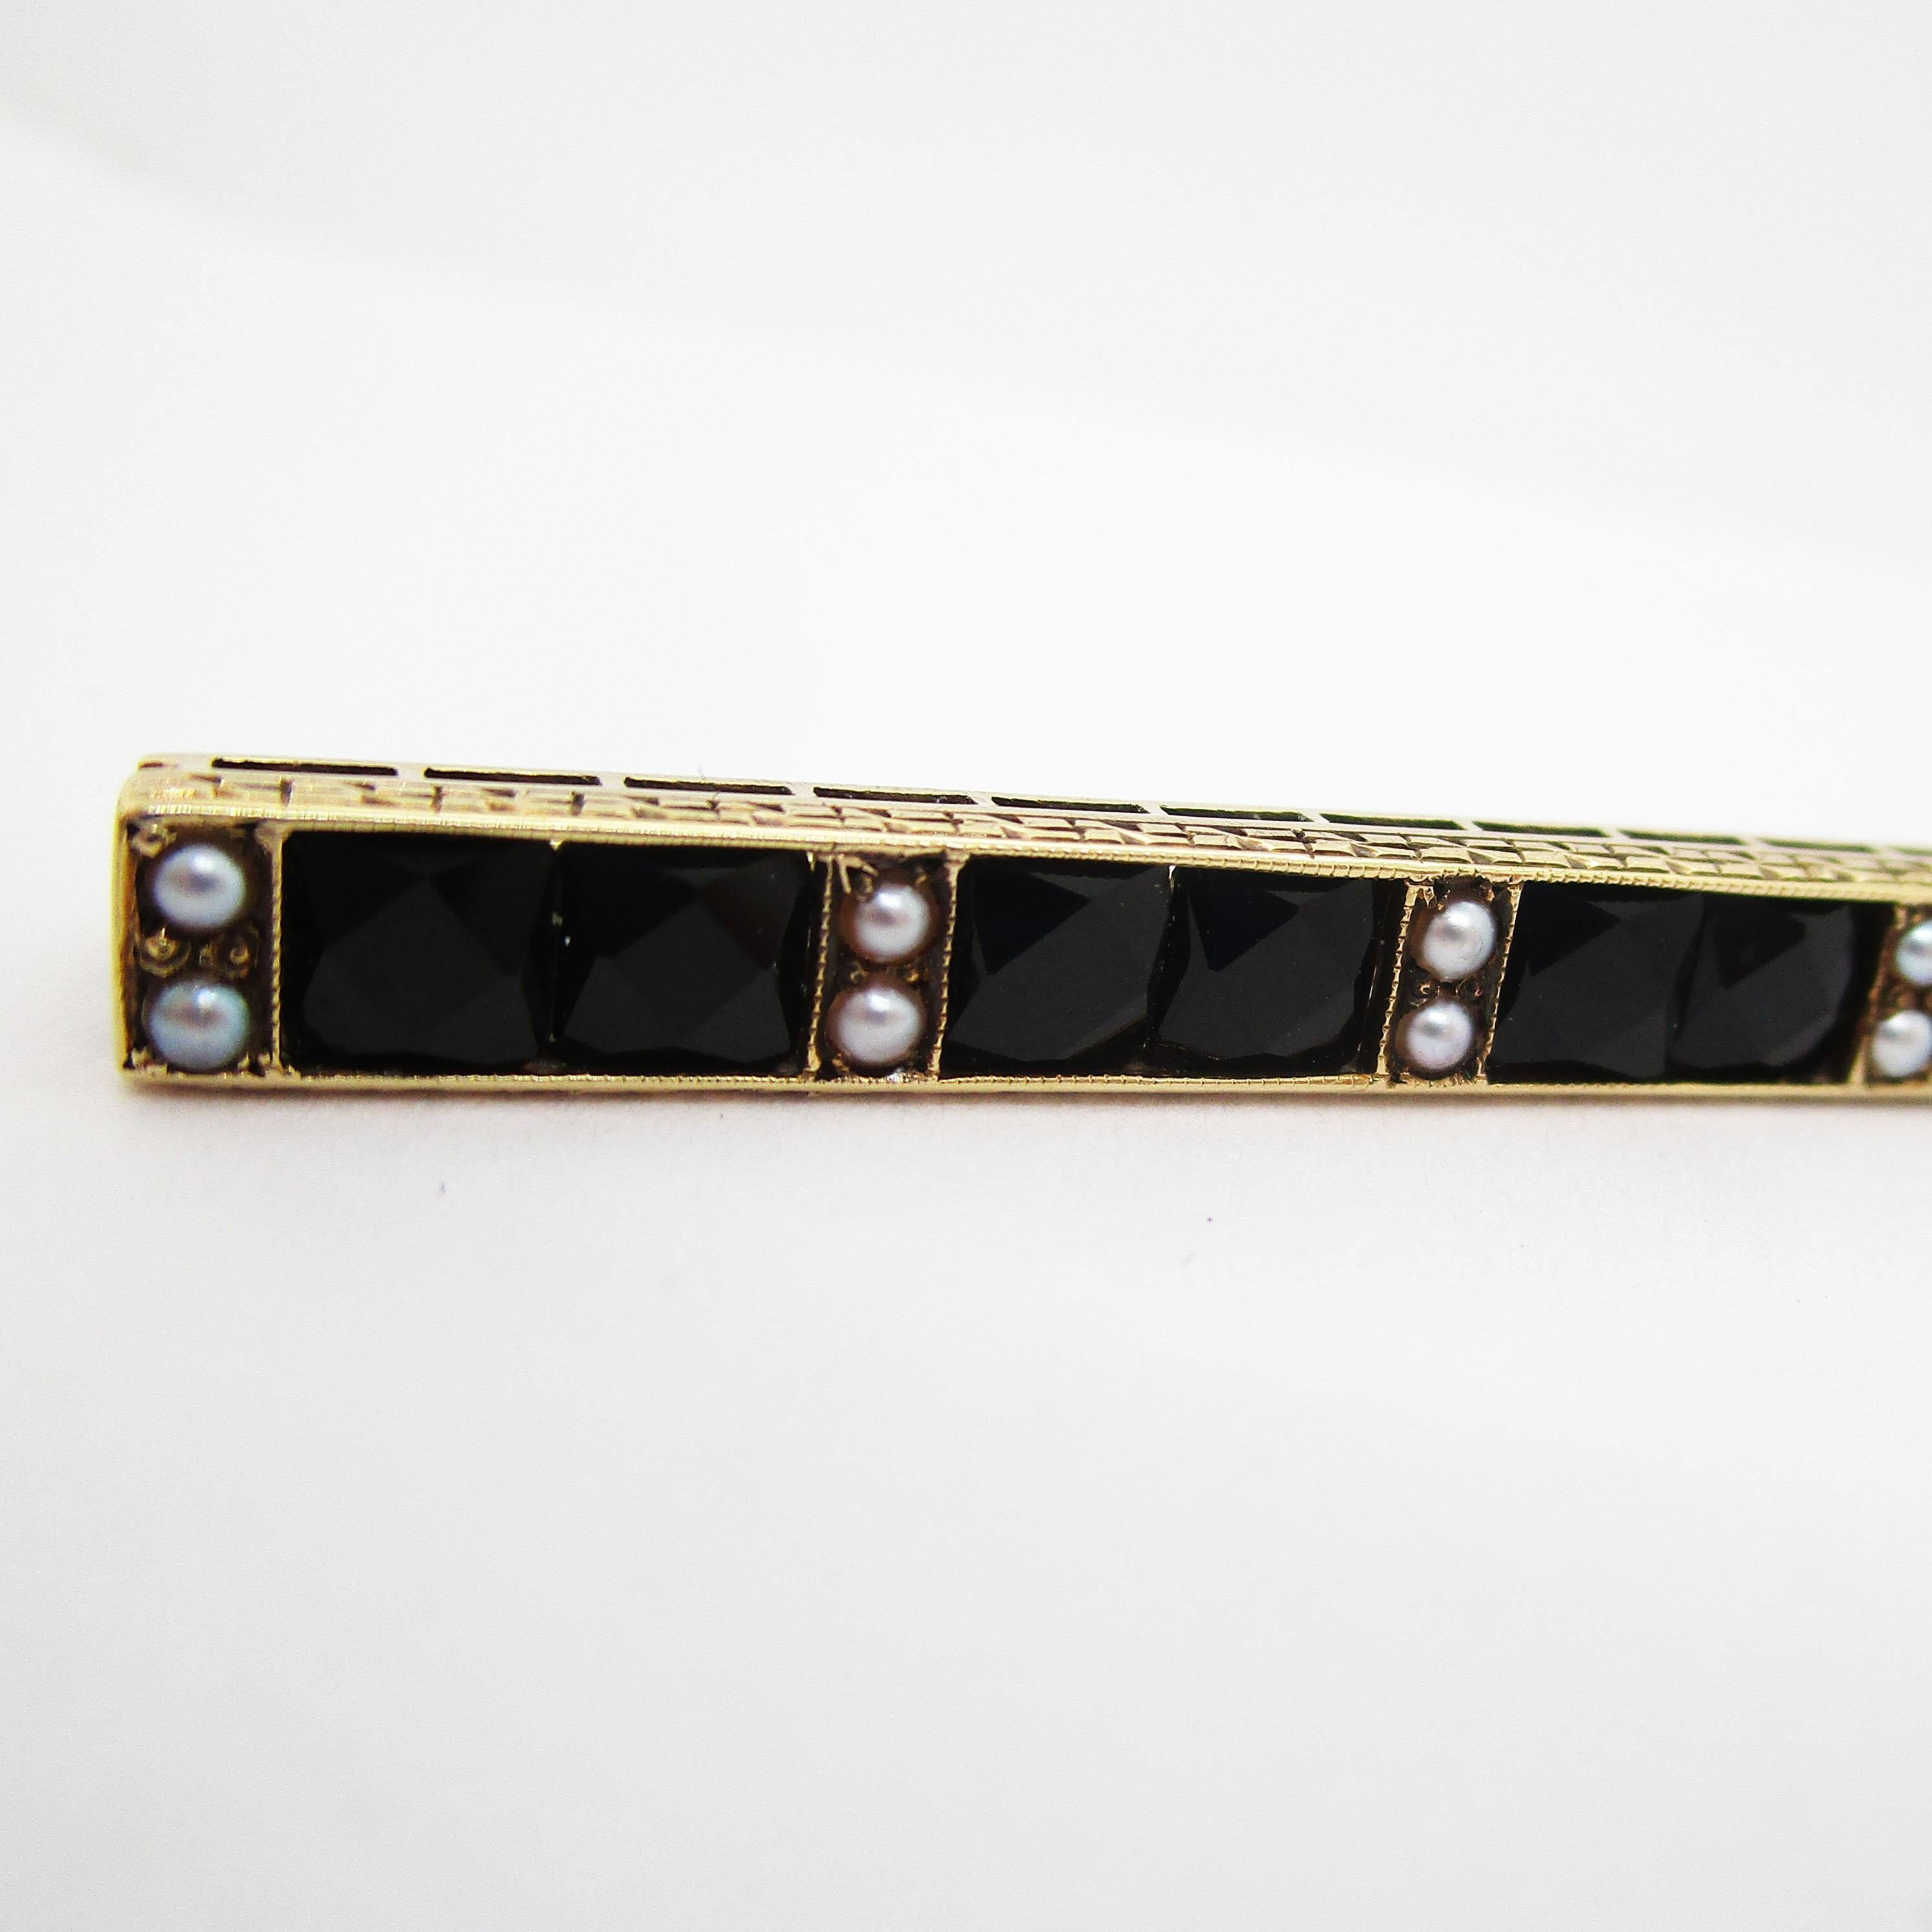 Dies ist eine atemberaubende Art Deco Bar Pin aus dem Jahr 1915 von Sloan & Co mit einer fantastischen Kombination aus französisch geschliffenen schwarzen Onyx, Saatperlen und 14k Gelbgold. Die dramatische Kombination aus geometrischem, facettiertem